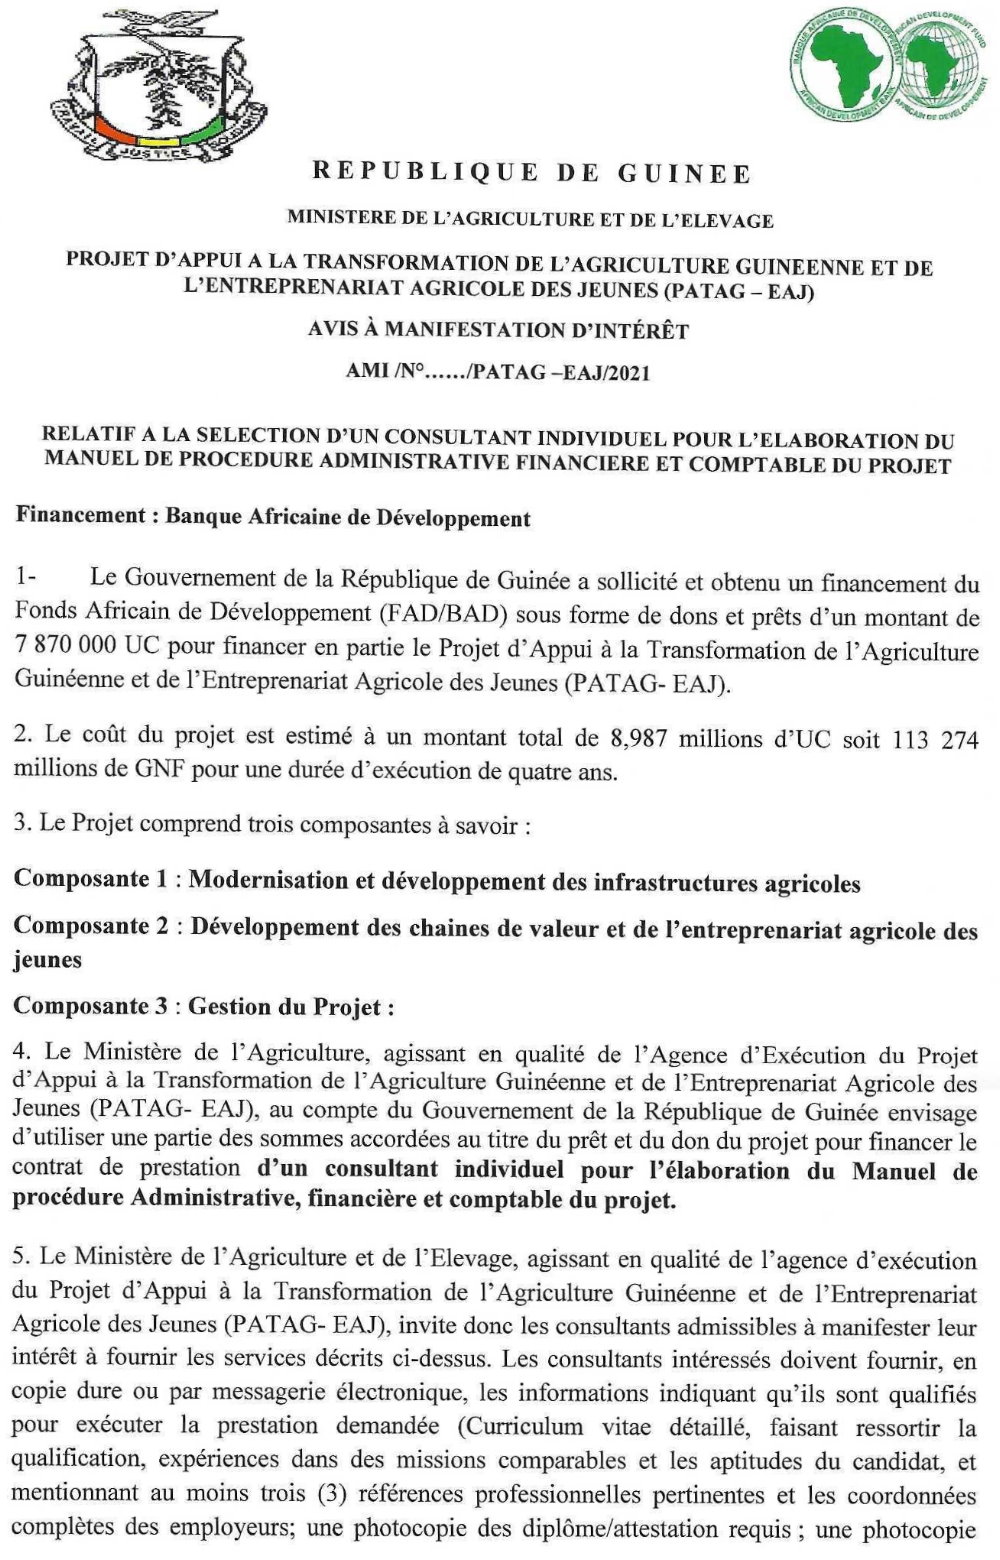 Elaboration du Manuel de Procédure Administrative Financière et Comptable - BAD p1